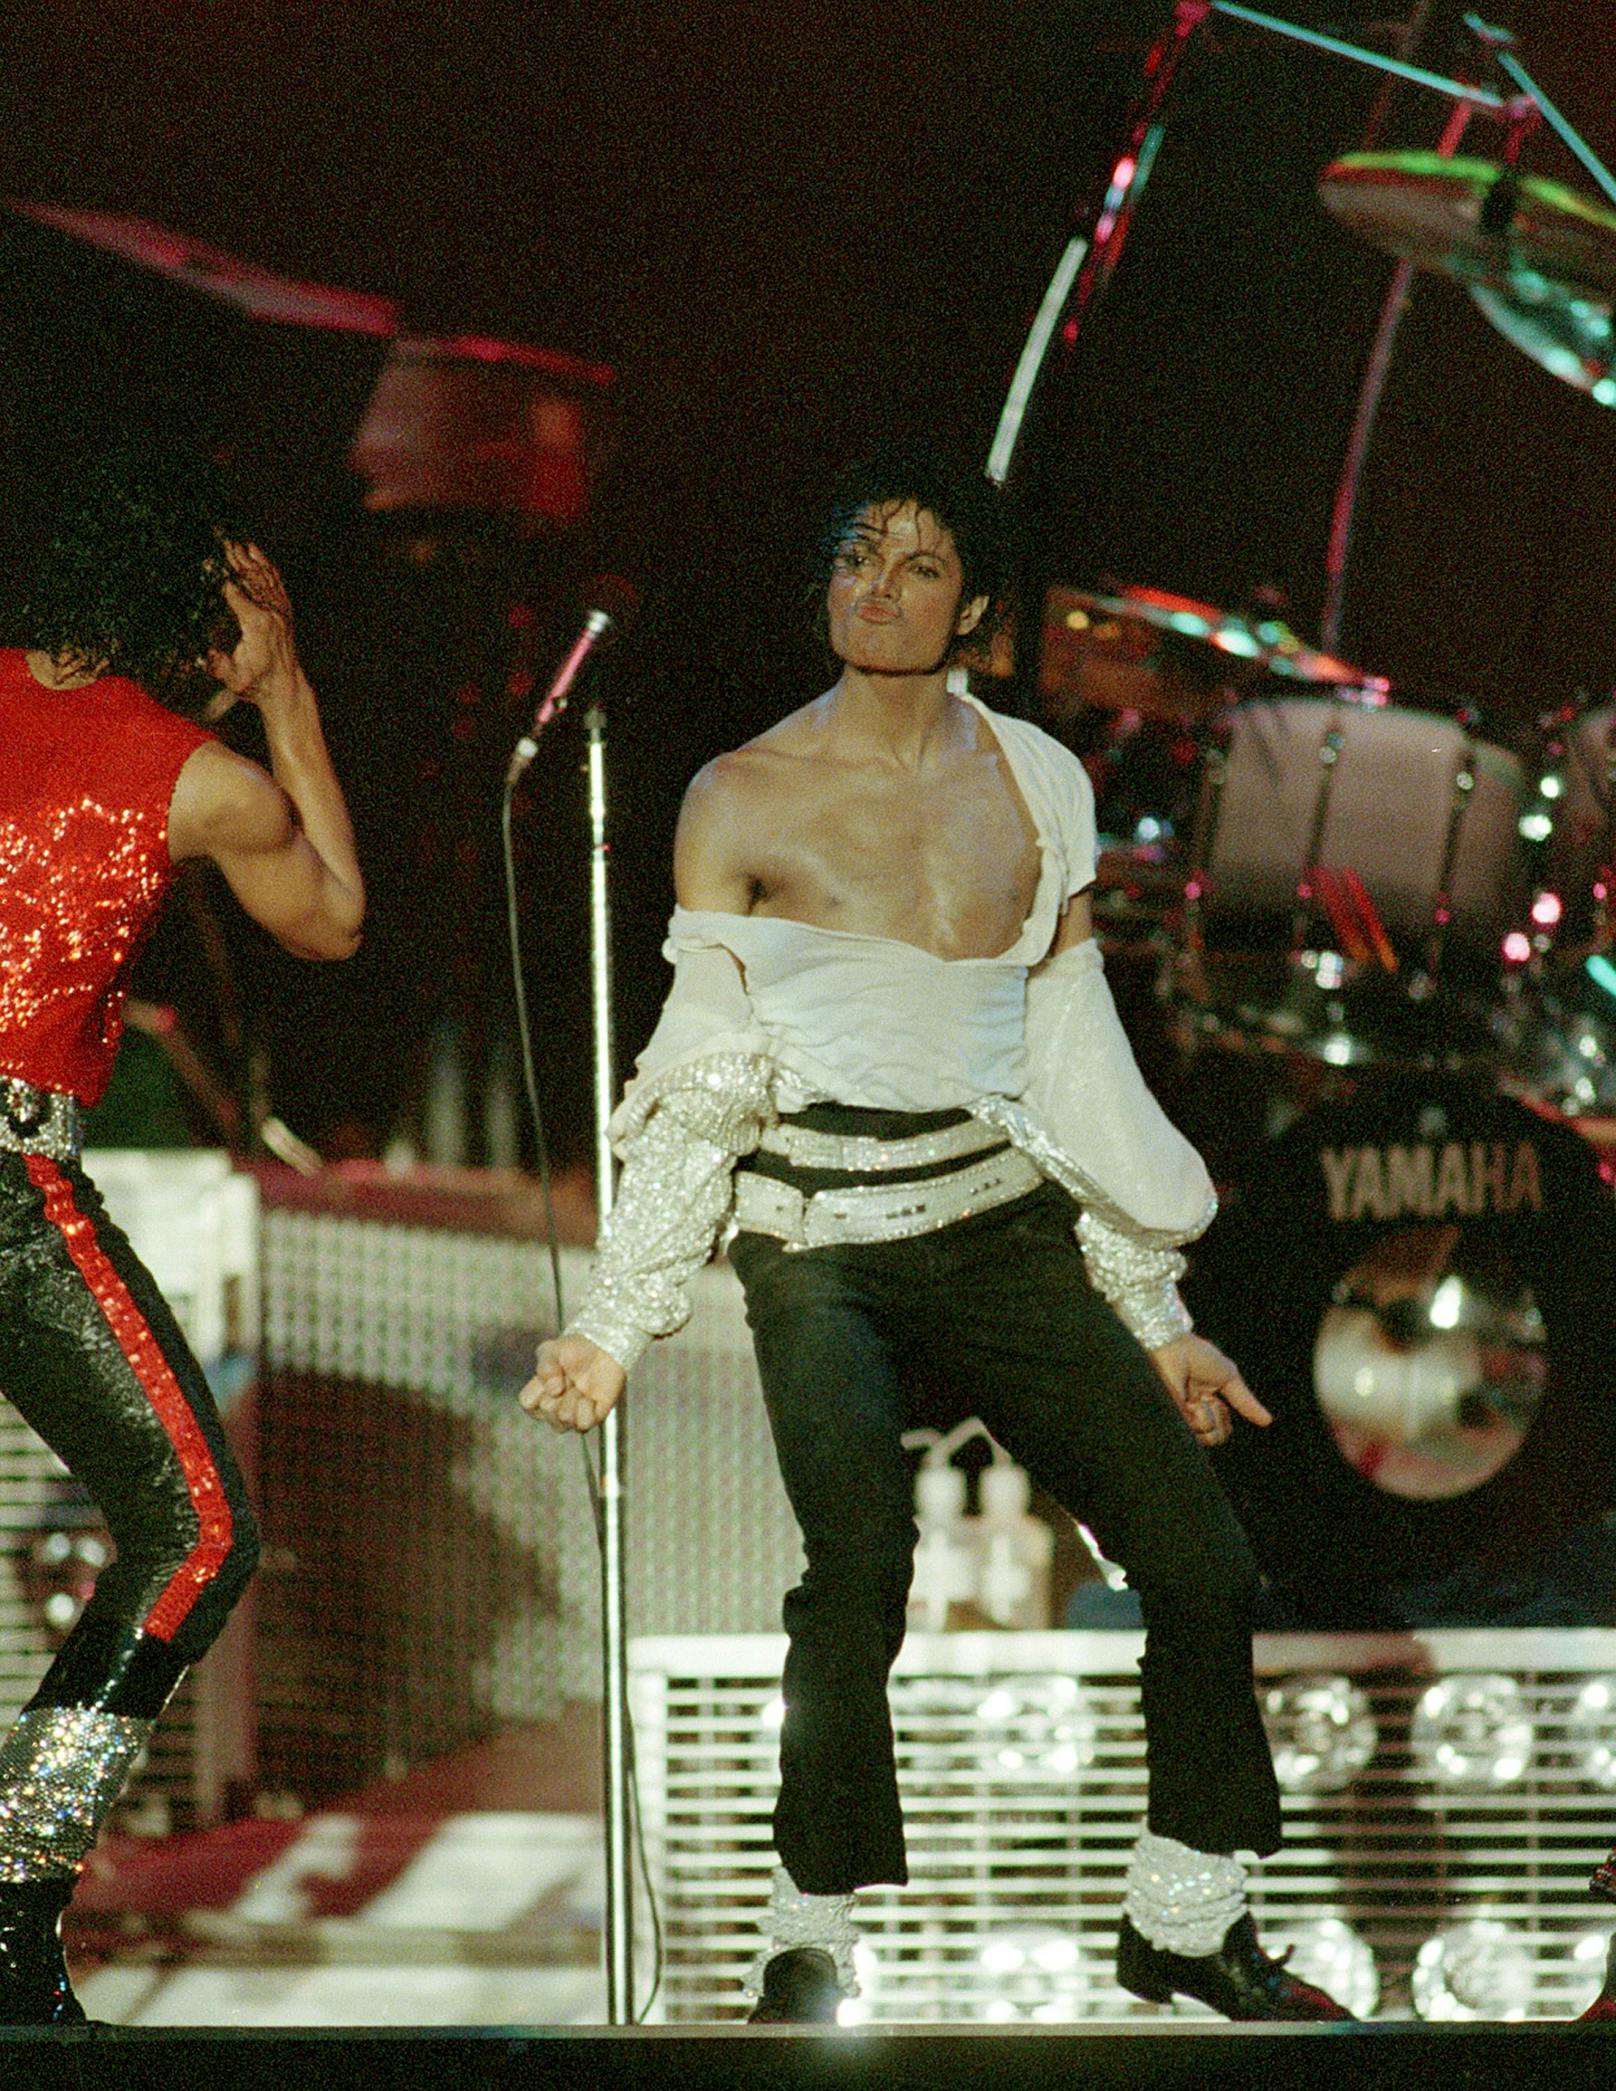 Michael Jackson wurde für seinen einzigartigen Tanzstil, seine innovativen Musikvideos und seine Bühnenpräsenz gefeiert.